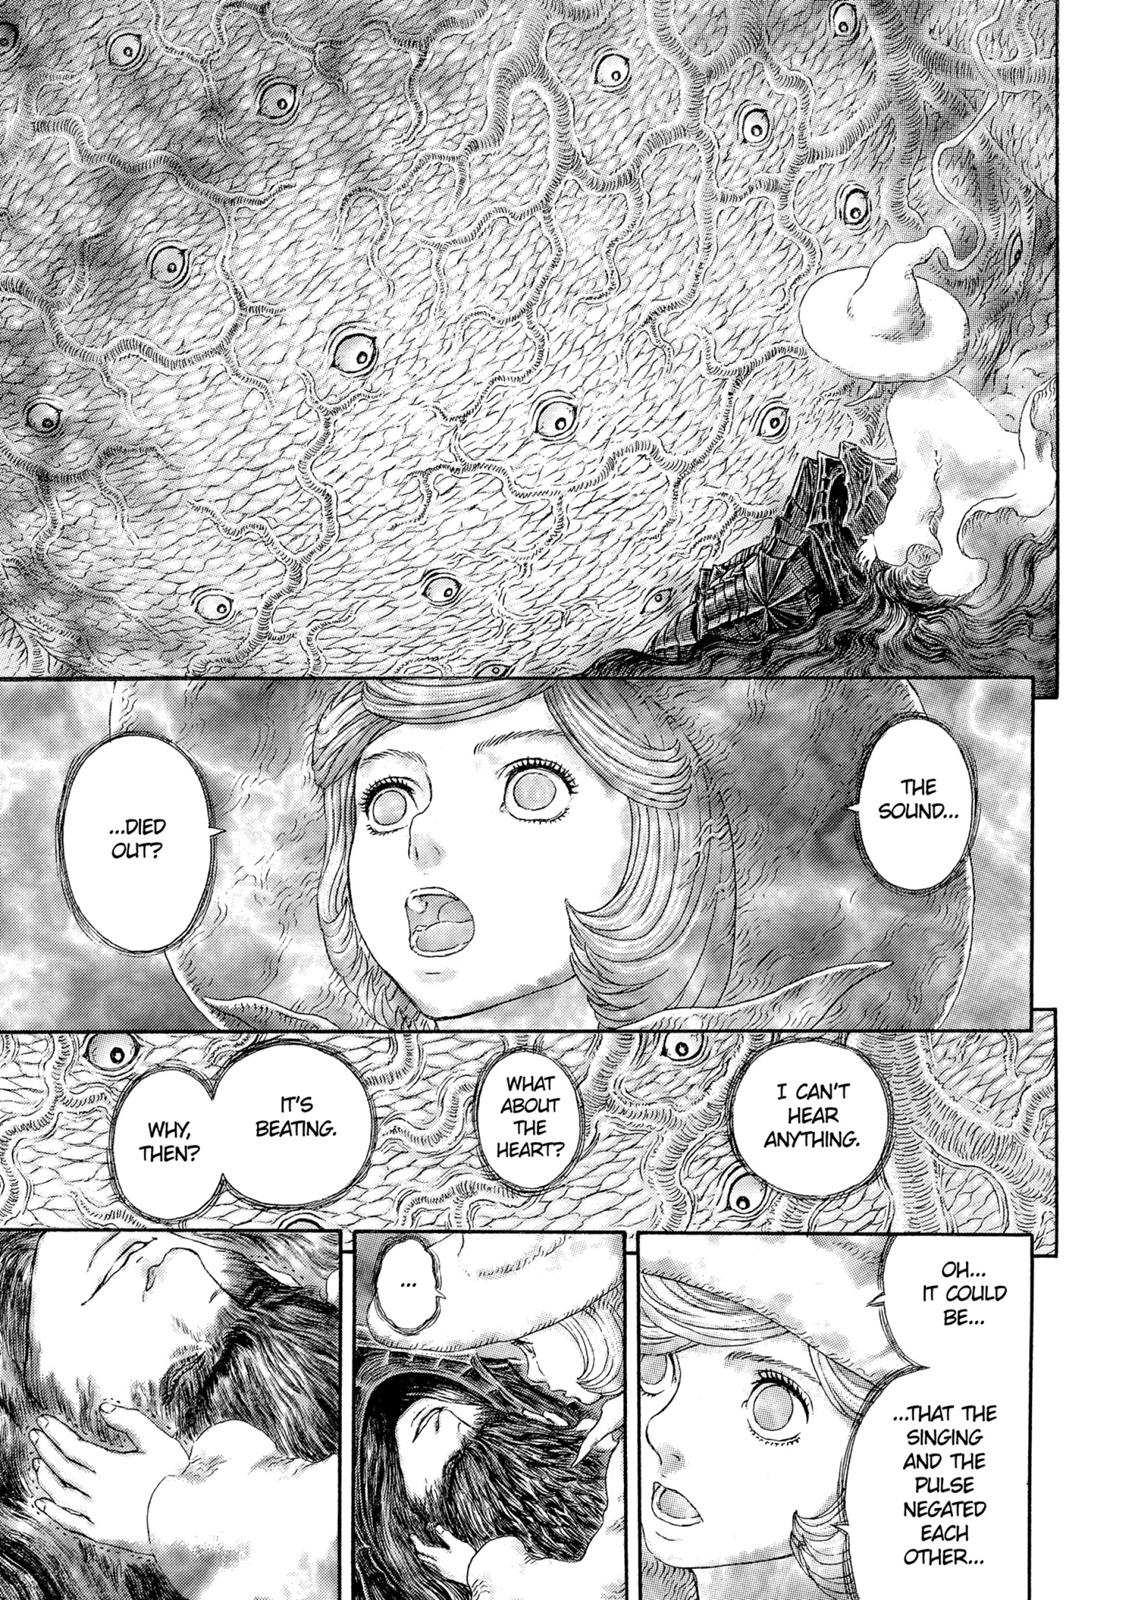 Berserk Manga Chapter 326 image 07